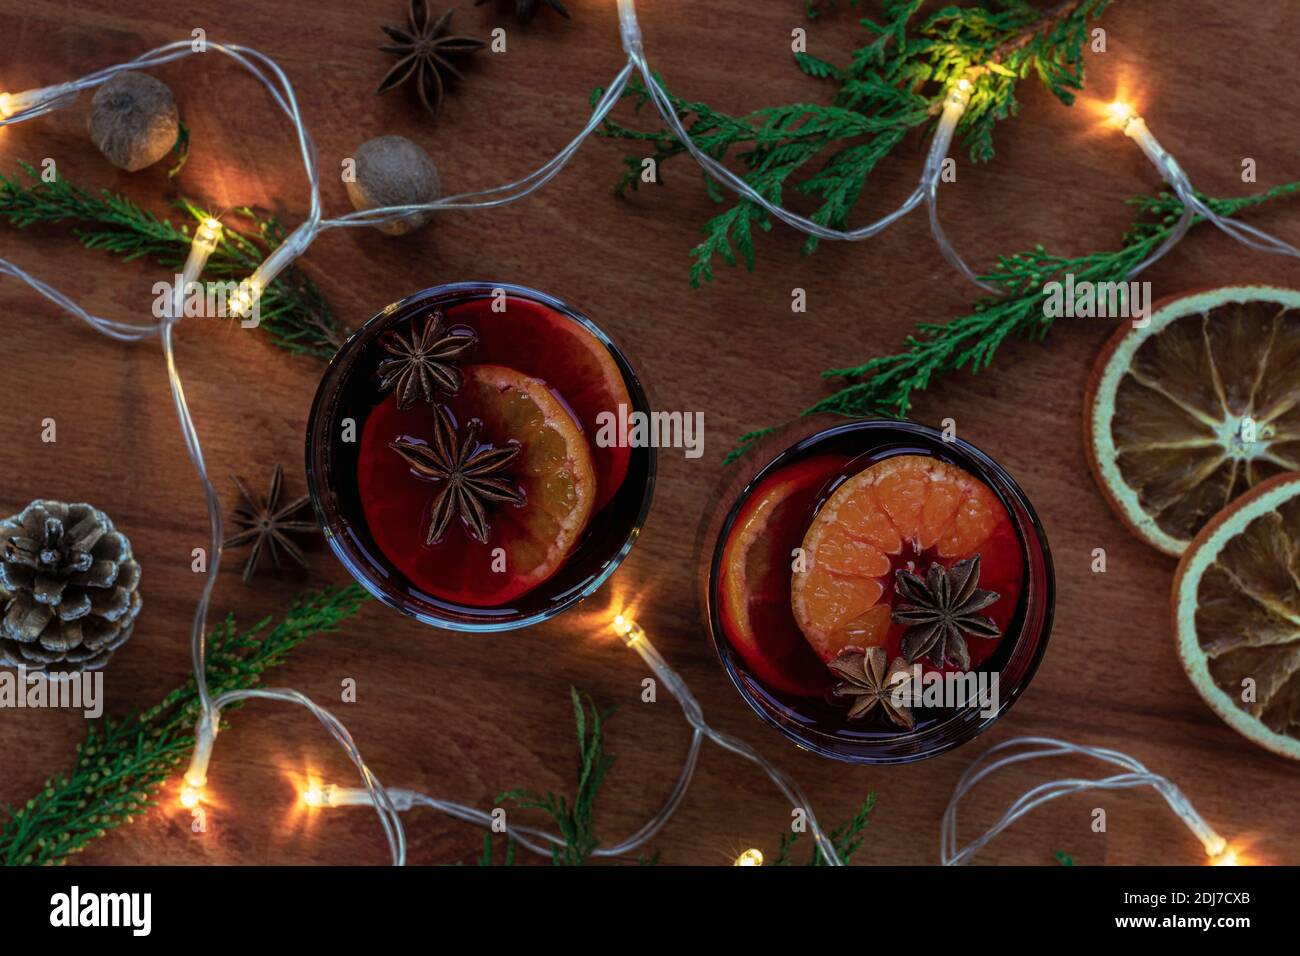 Deux verres de vin chaud aux agrumes, anis étoilé, muscade sur table en bois. Boisson de Noël de saison, décorations et lumières du nouvel an, t Banque D'Images